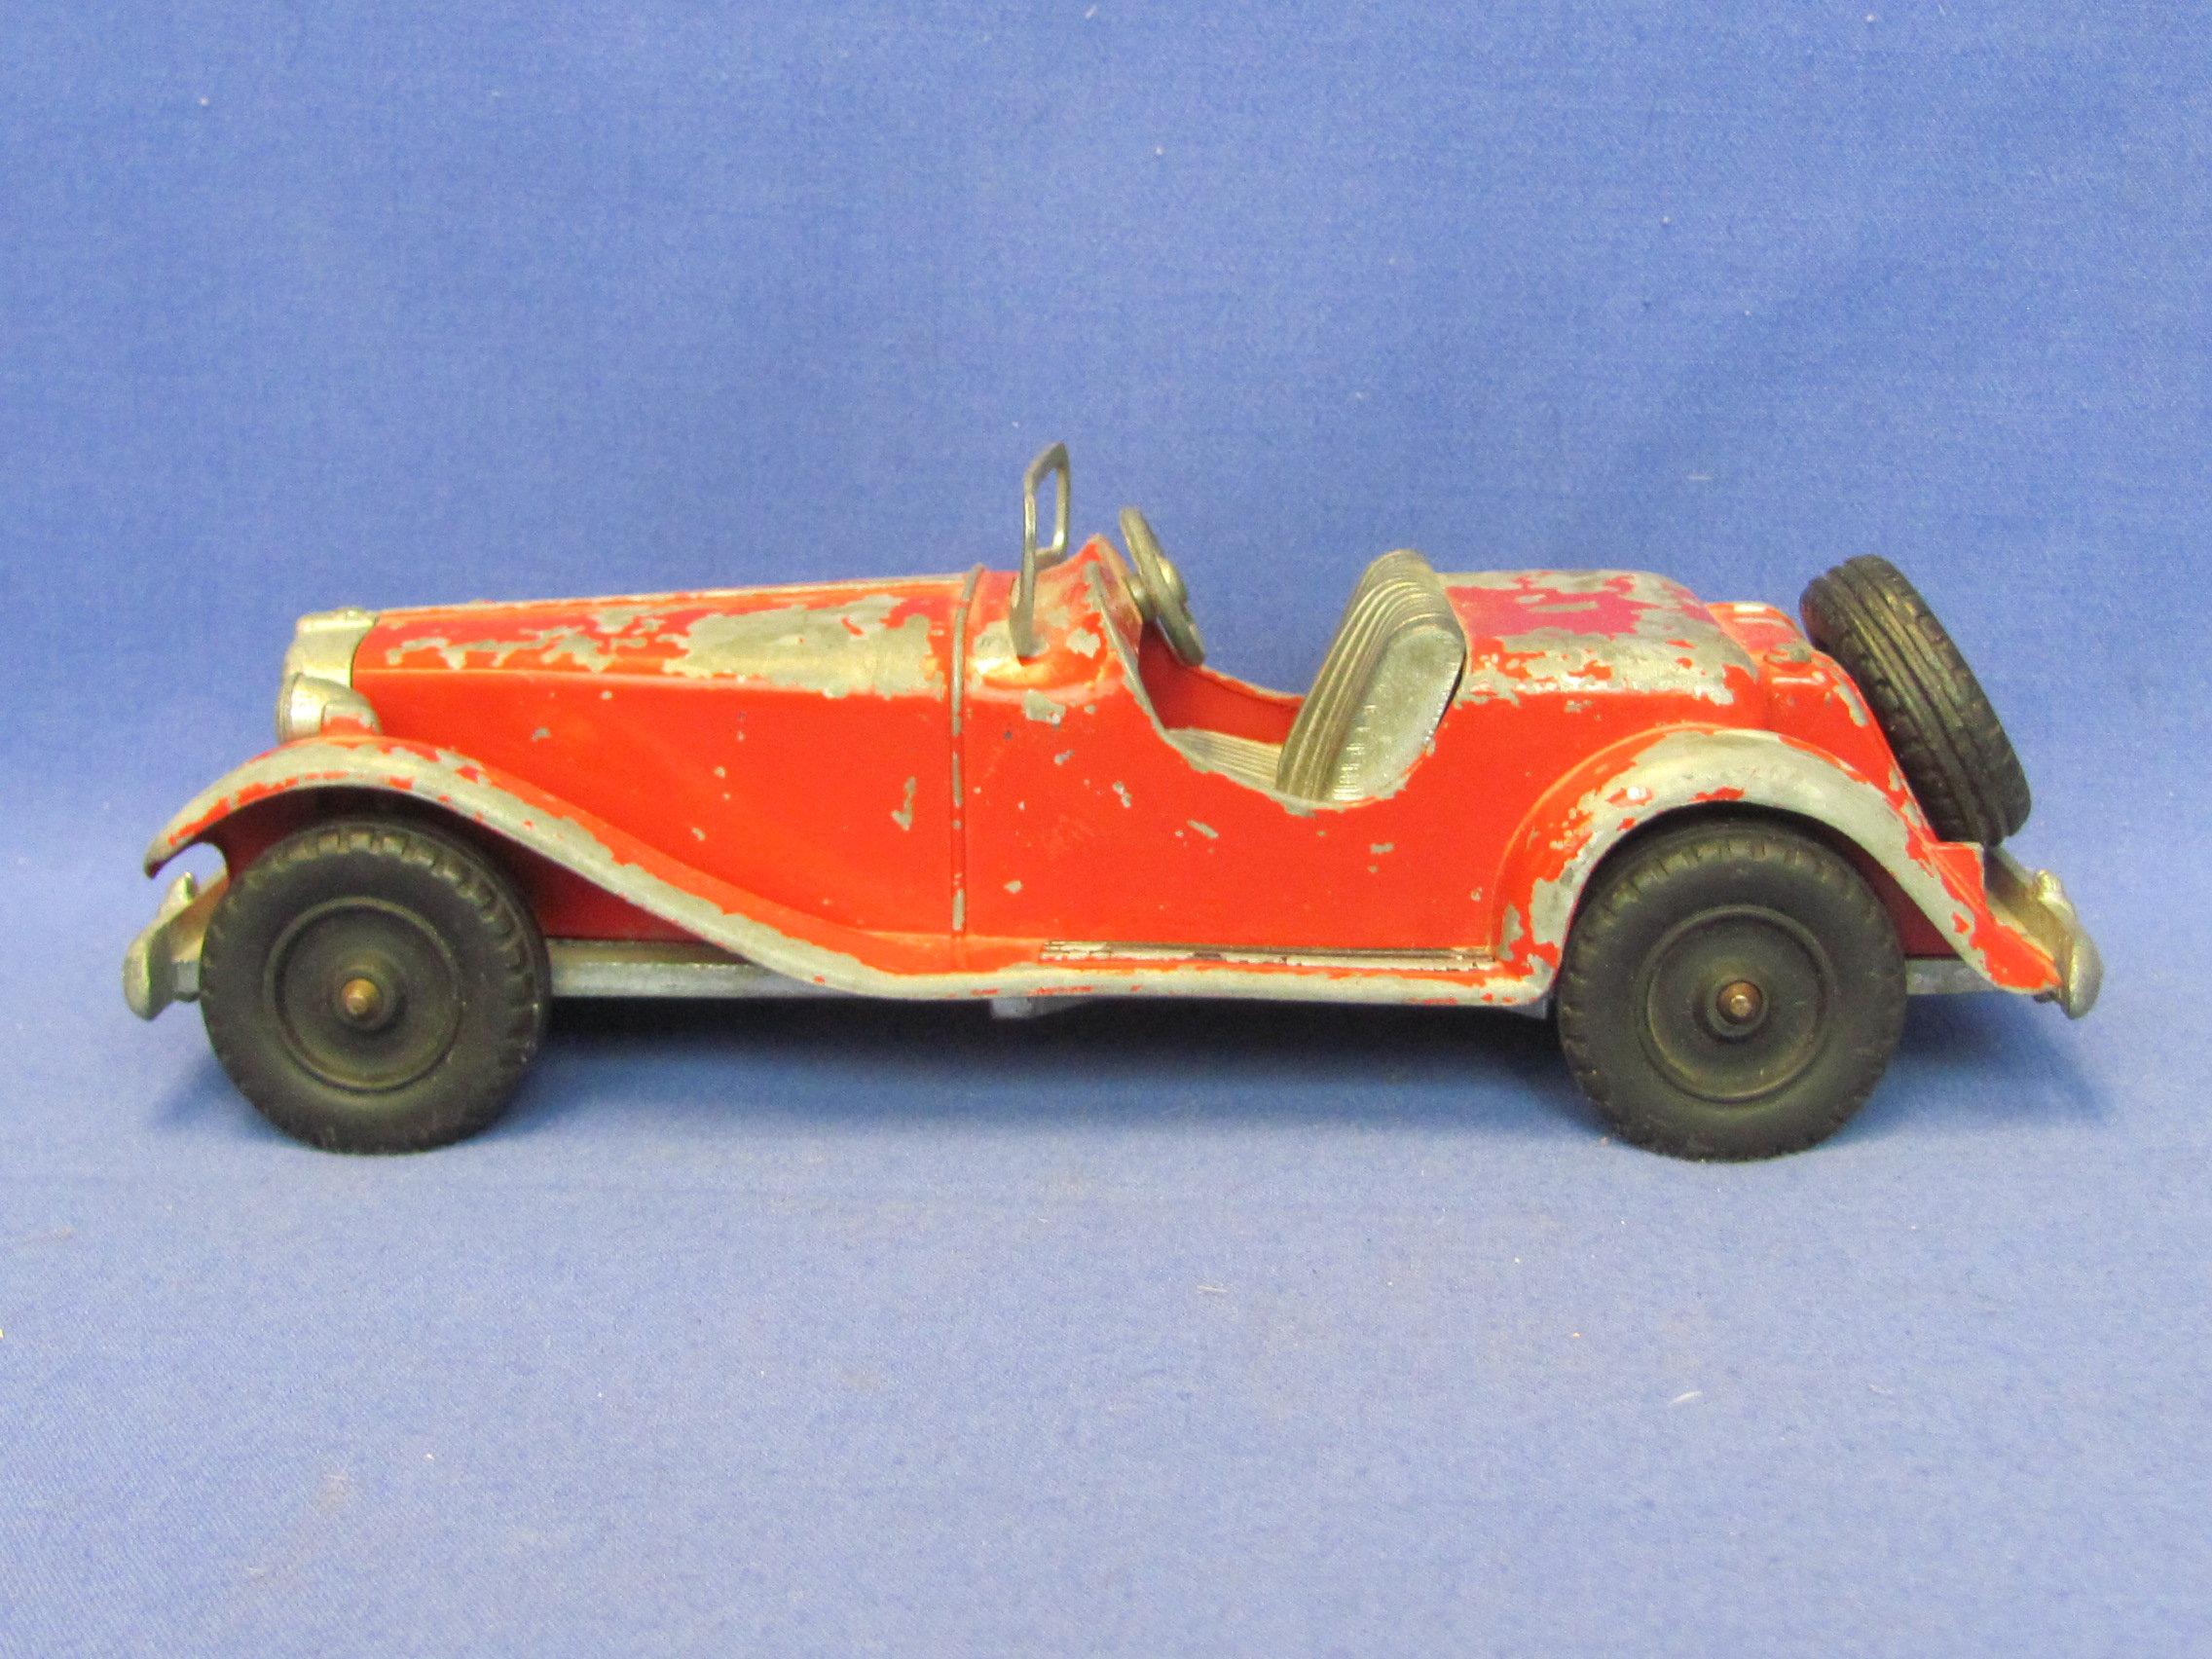 Vintage Hubley Kiddie Toy Car #485 – Red MG Roadster – Metal – 8 3/4” long